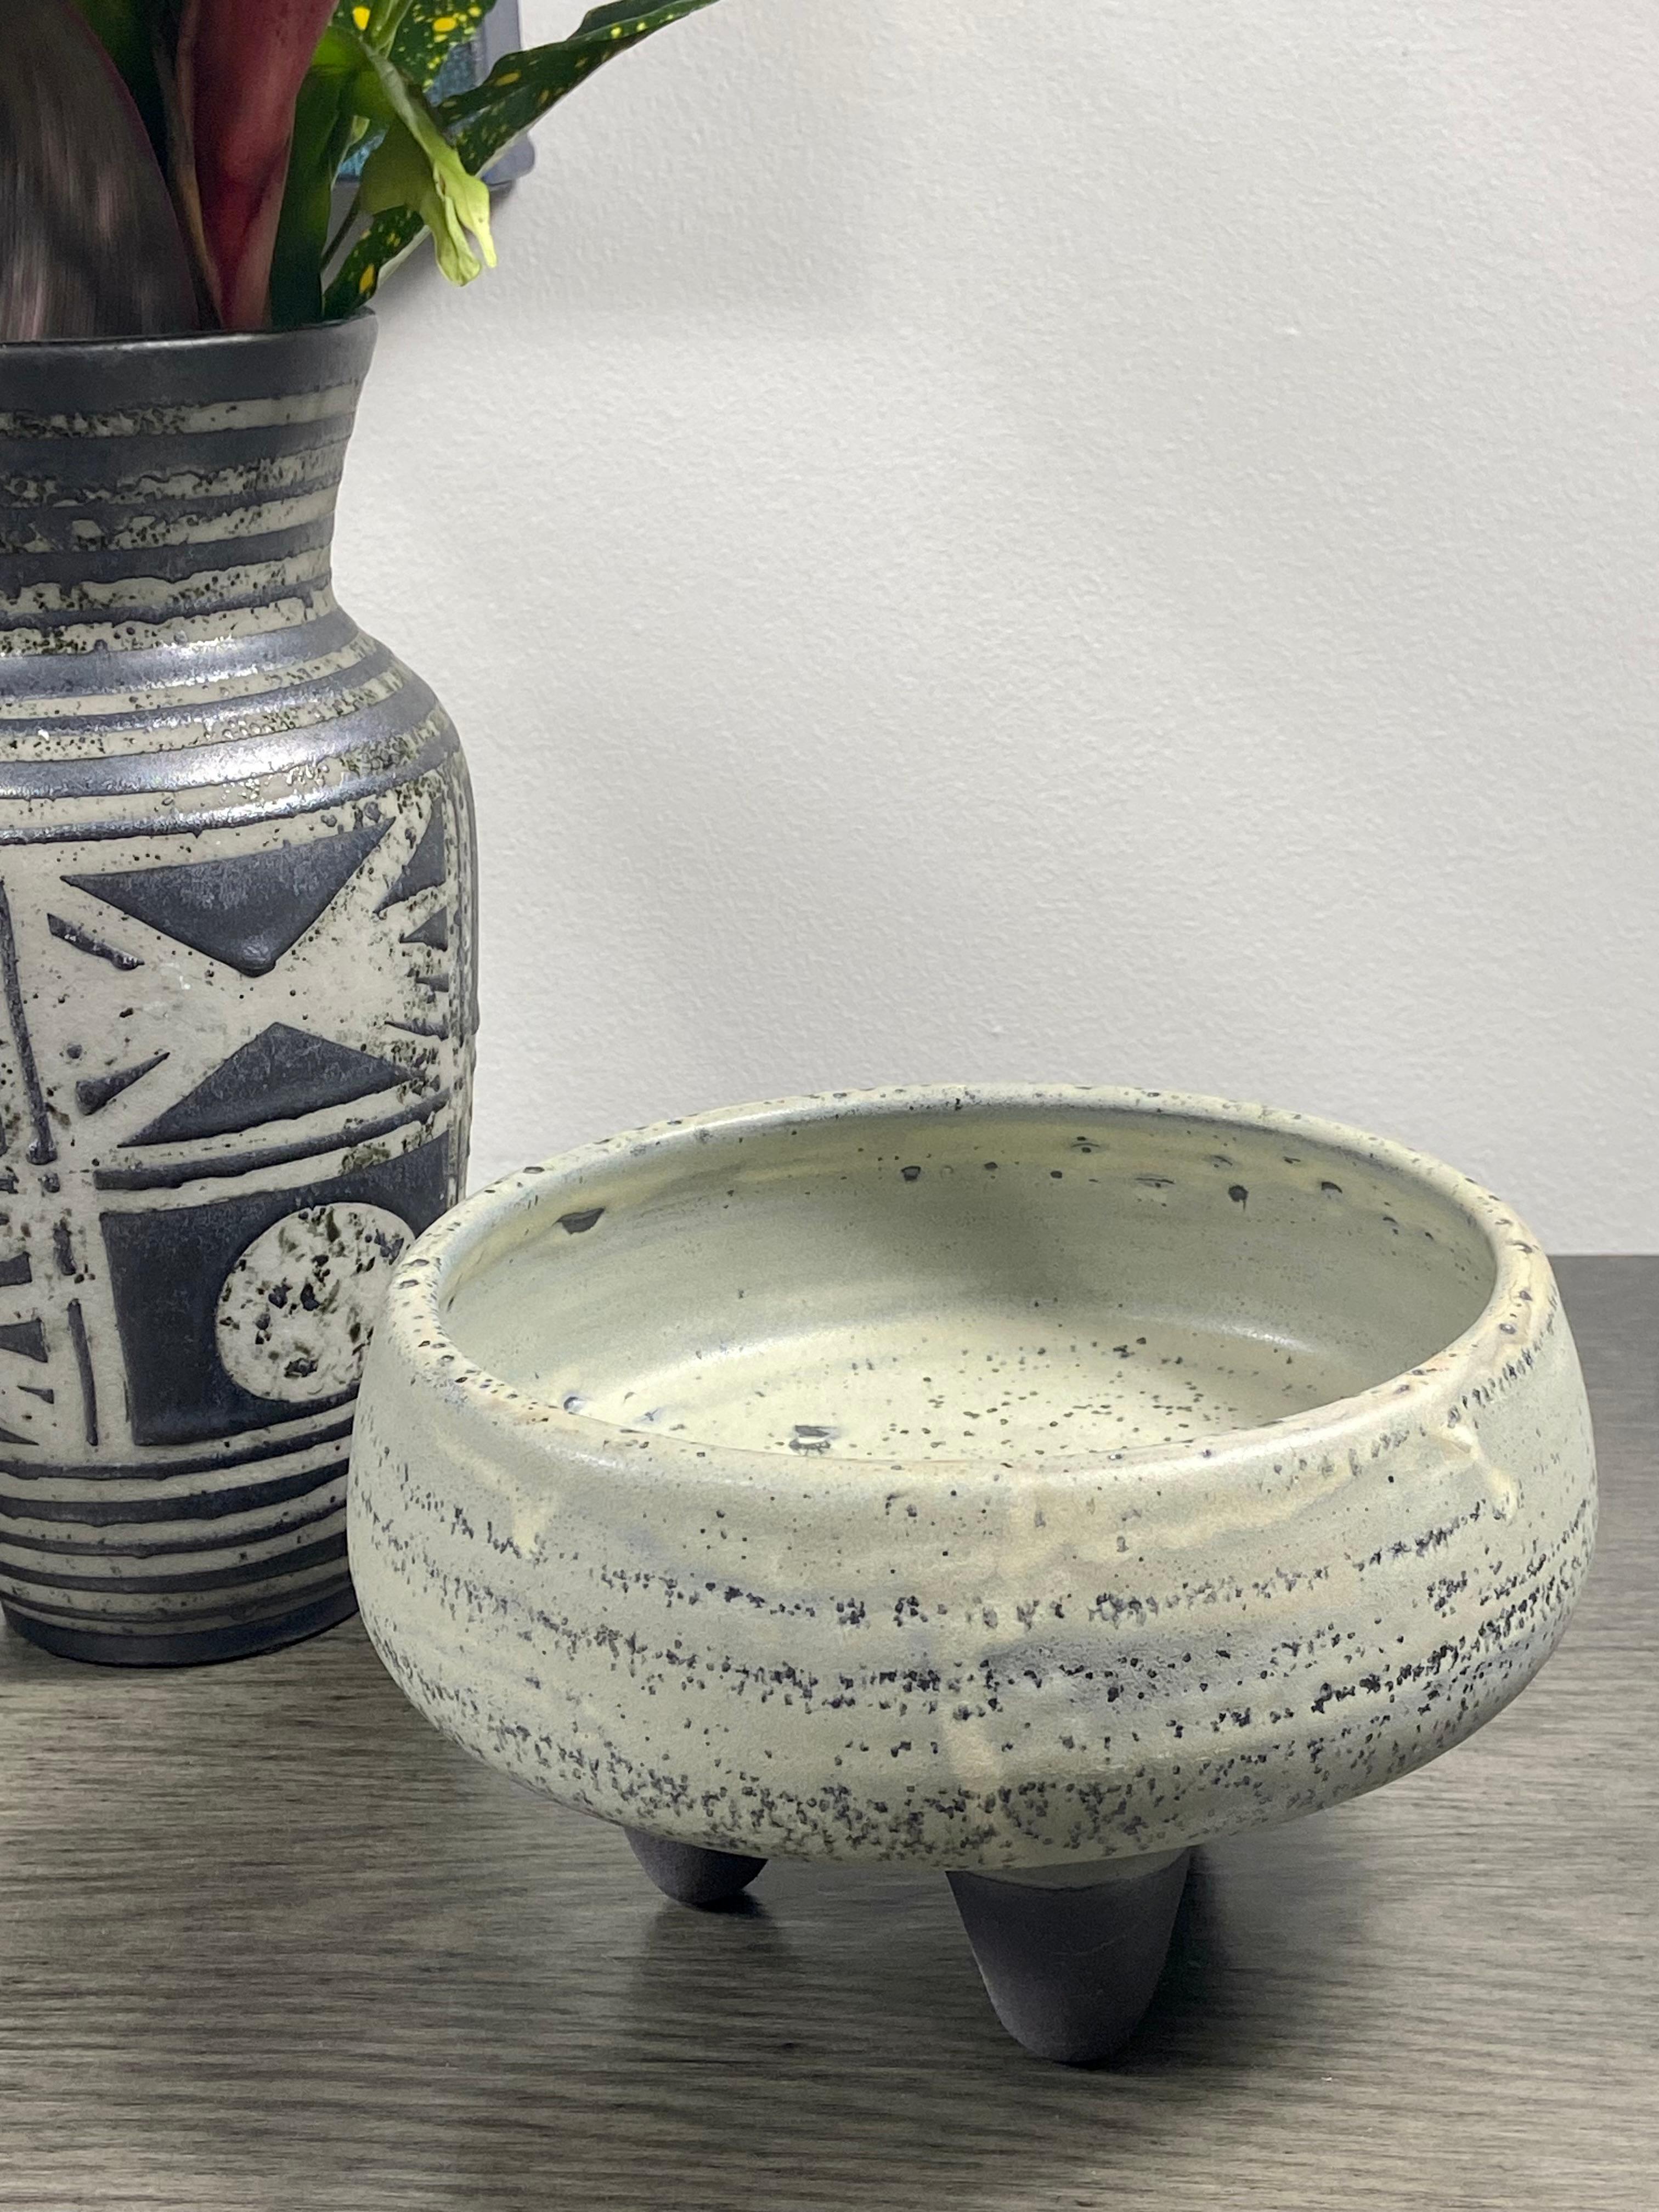 längliche schale keramik